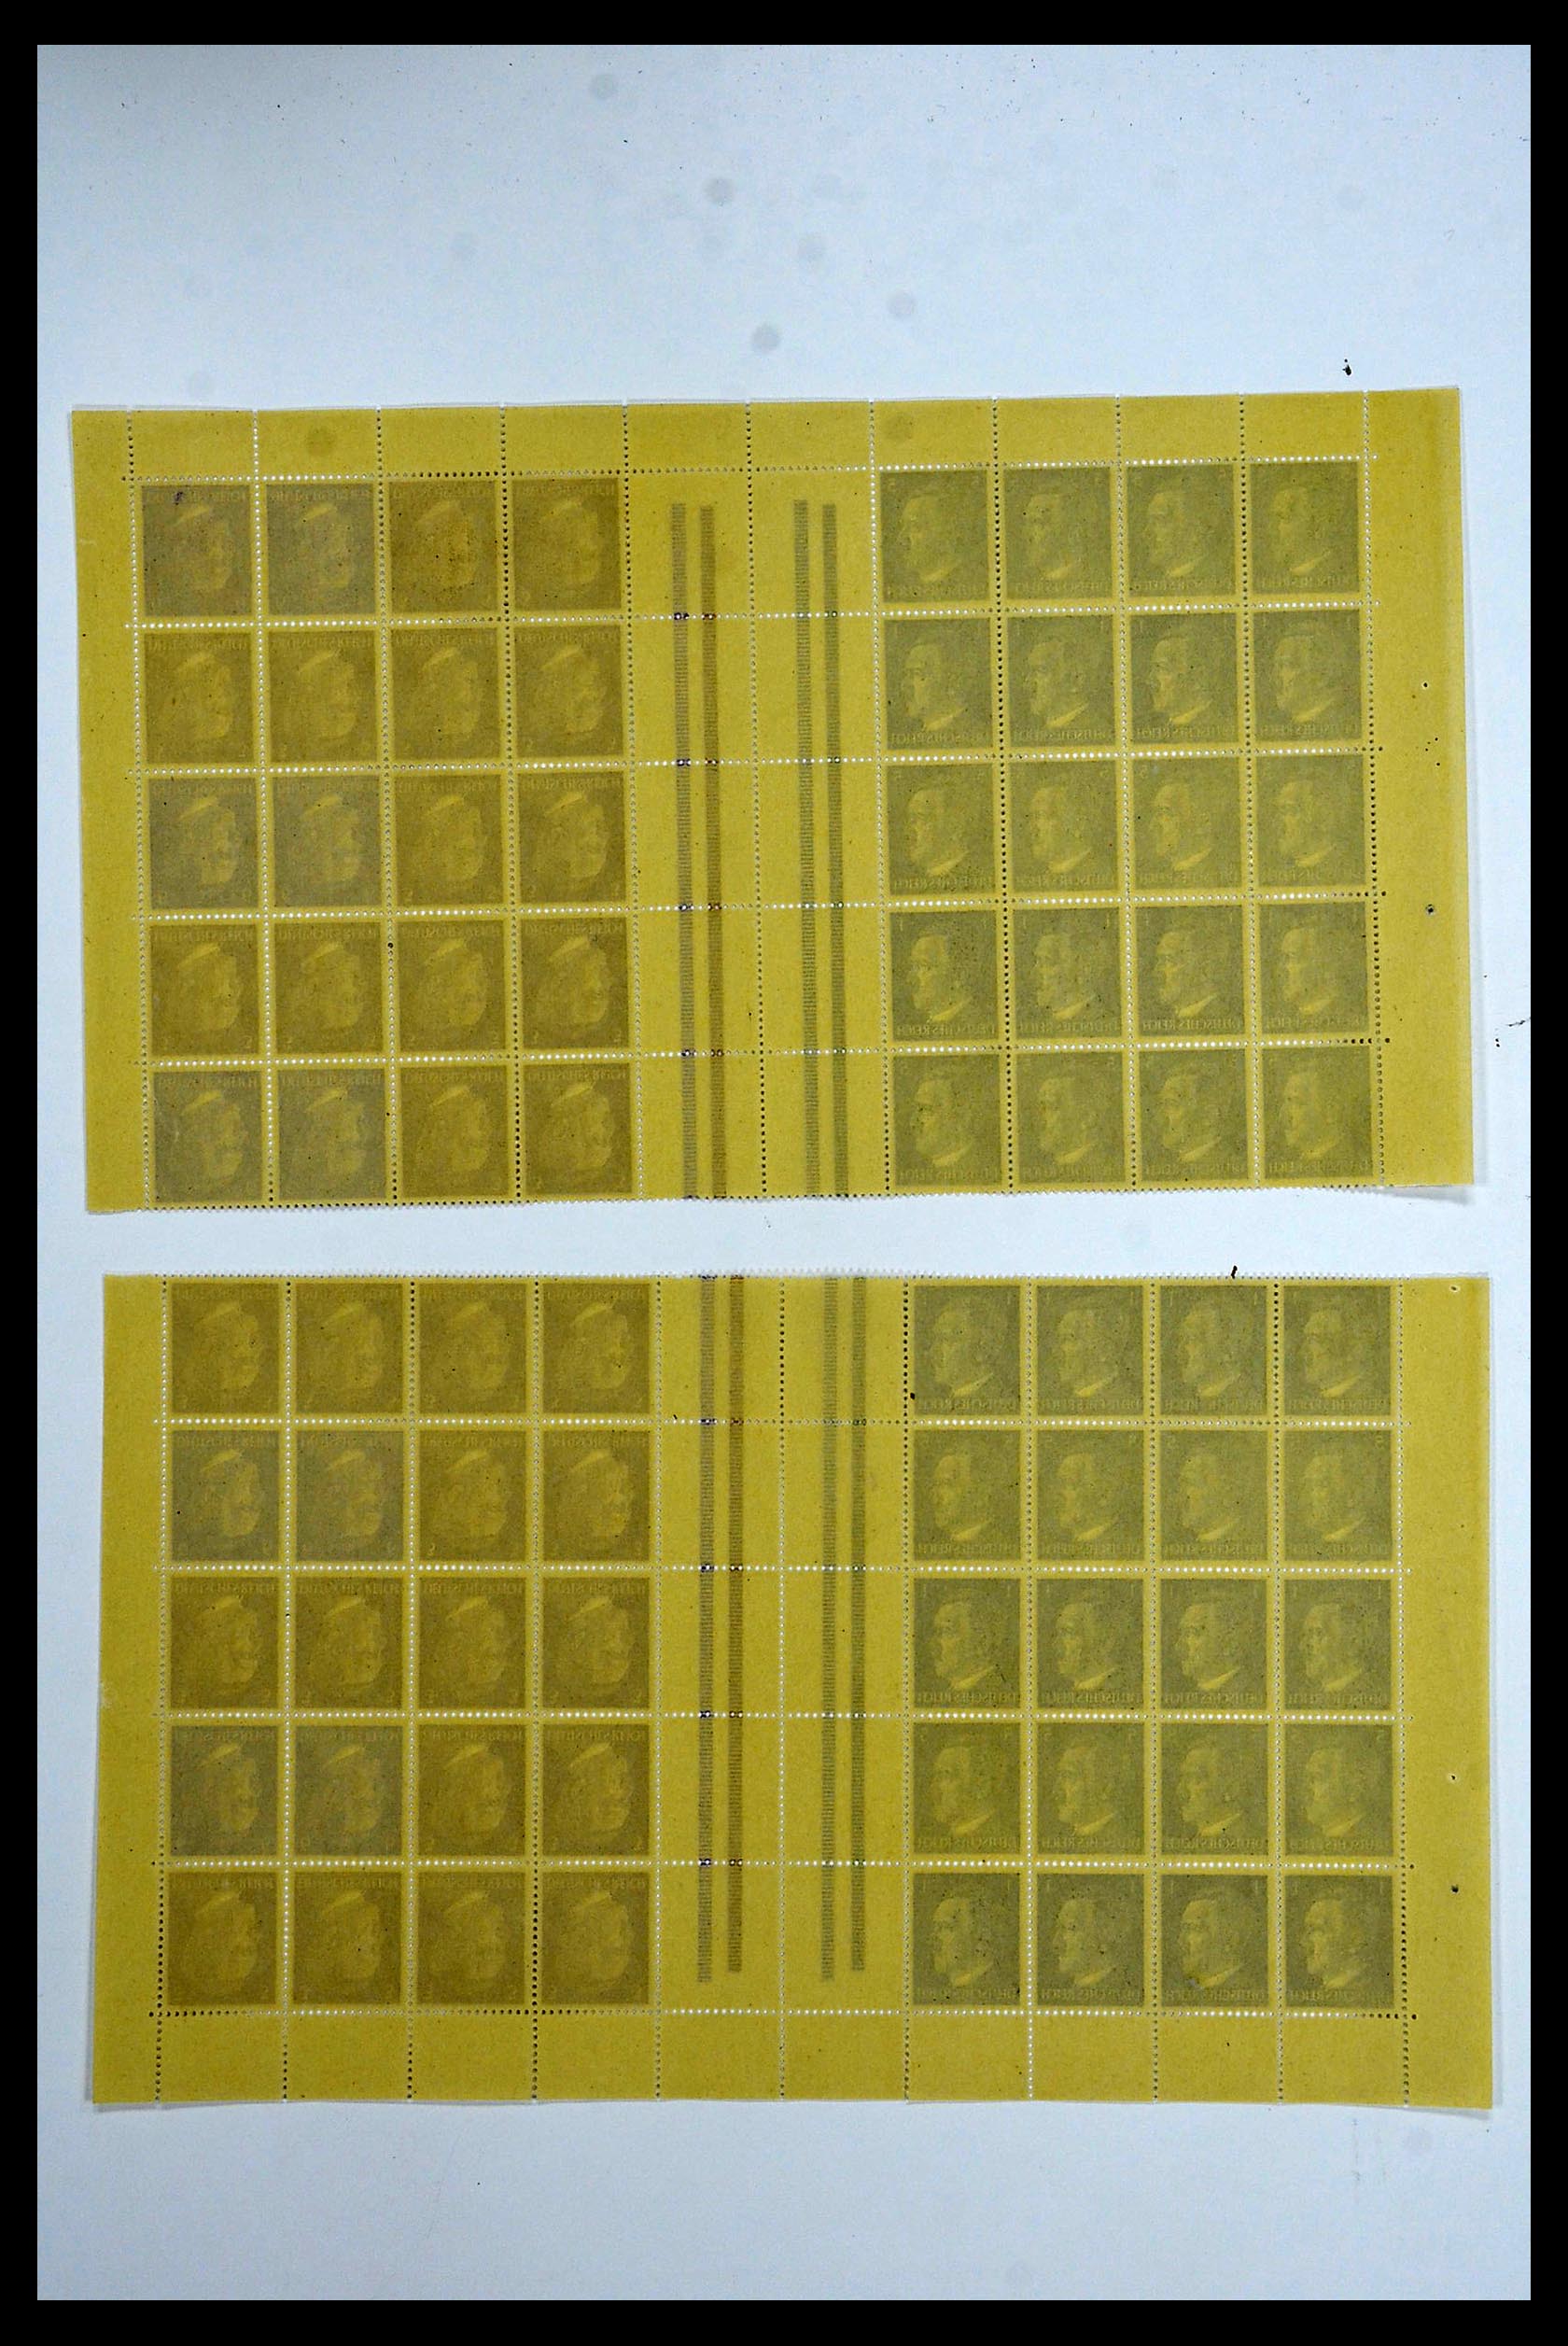 34164 071 - Stamp collection 34164 German Reich Markenheftchenbogen 1933-1942.